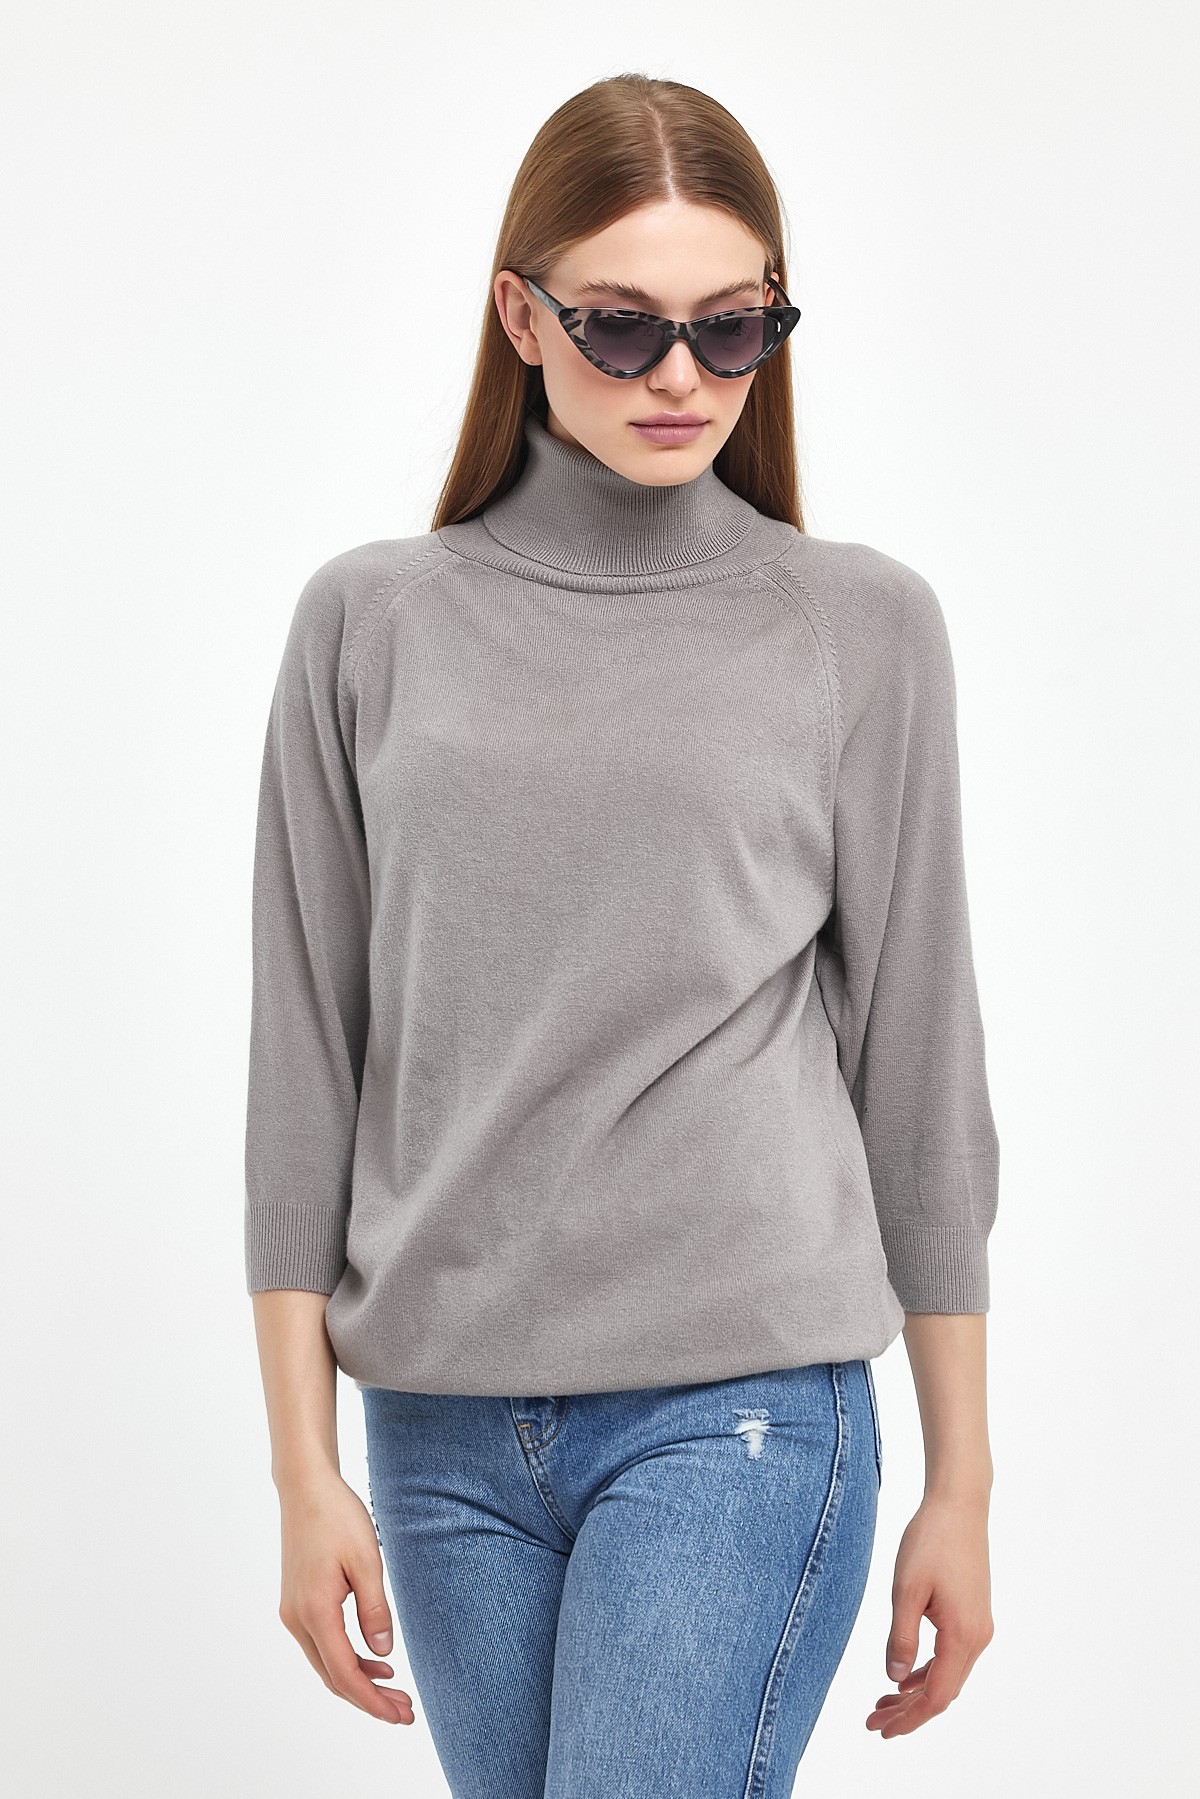 3/4 Sleeve Turtleneck Knitwear Sweater